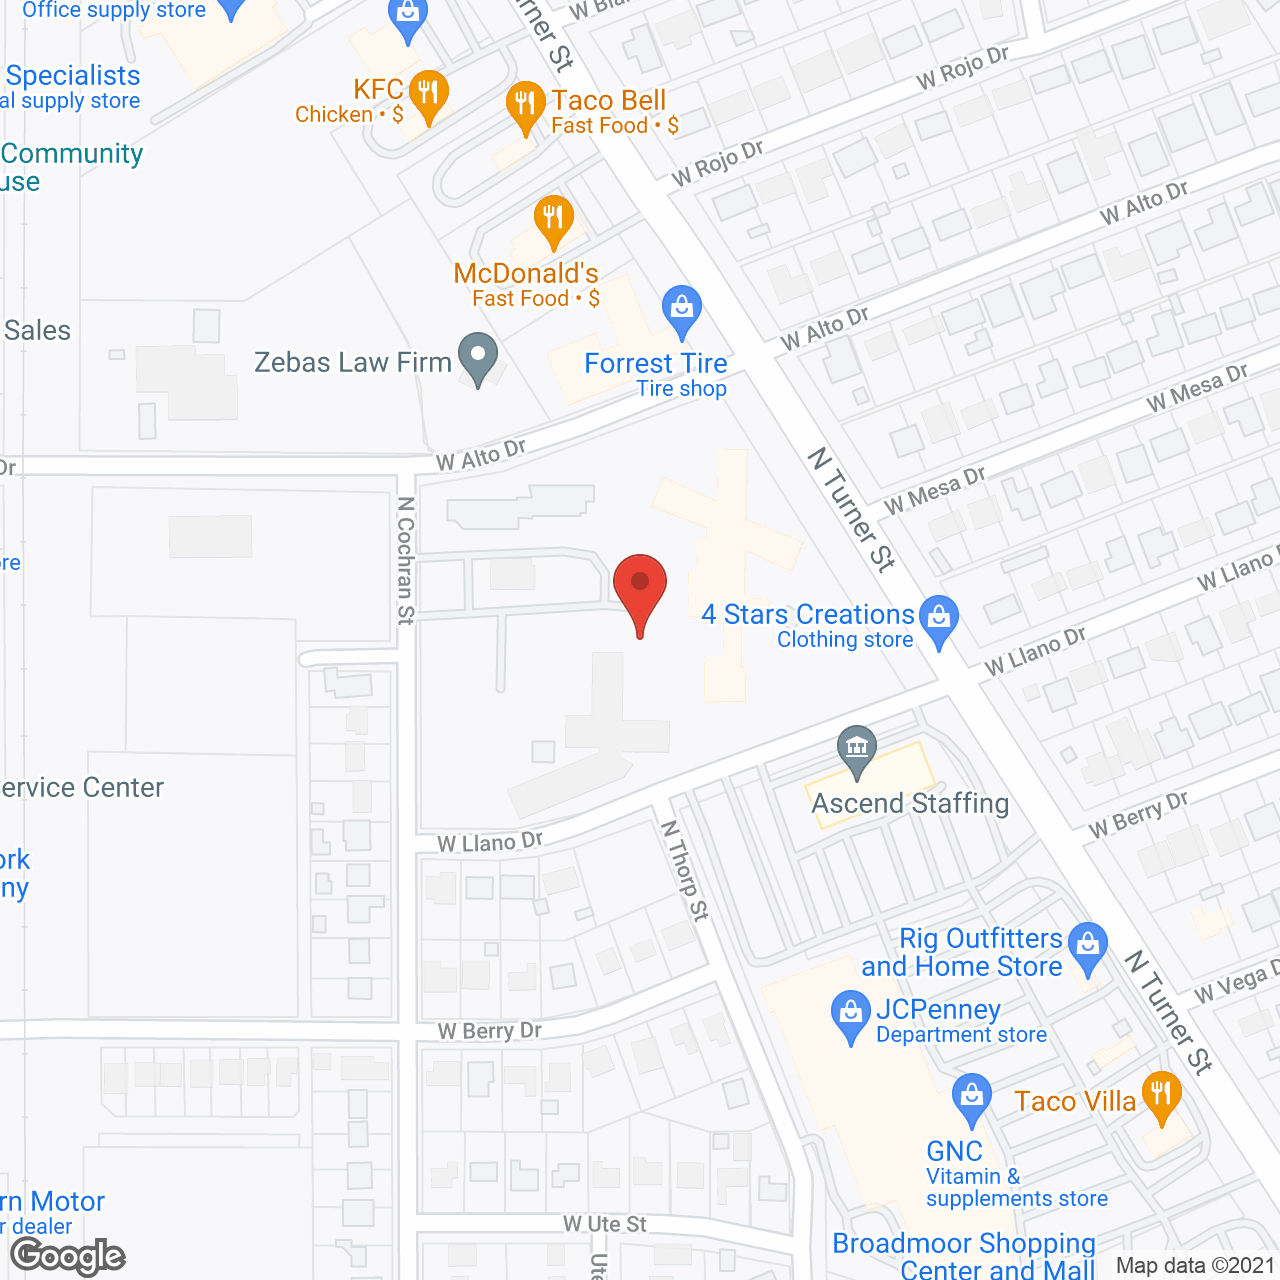 Good Samaritan Village in google map